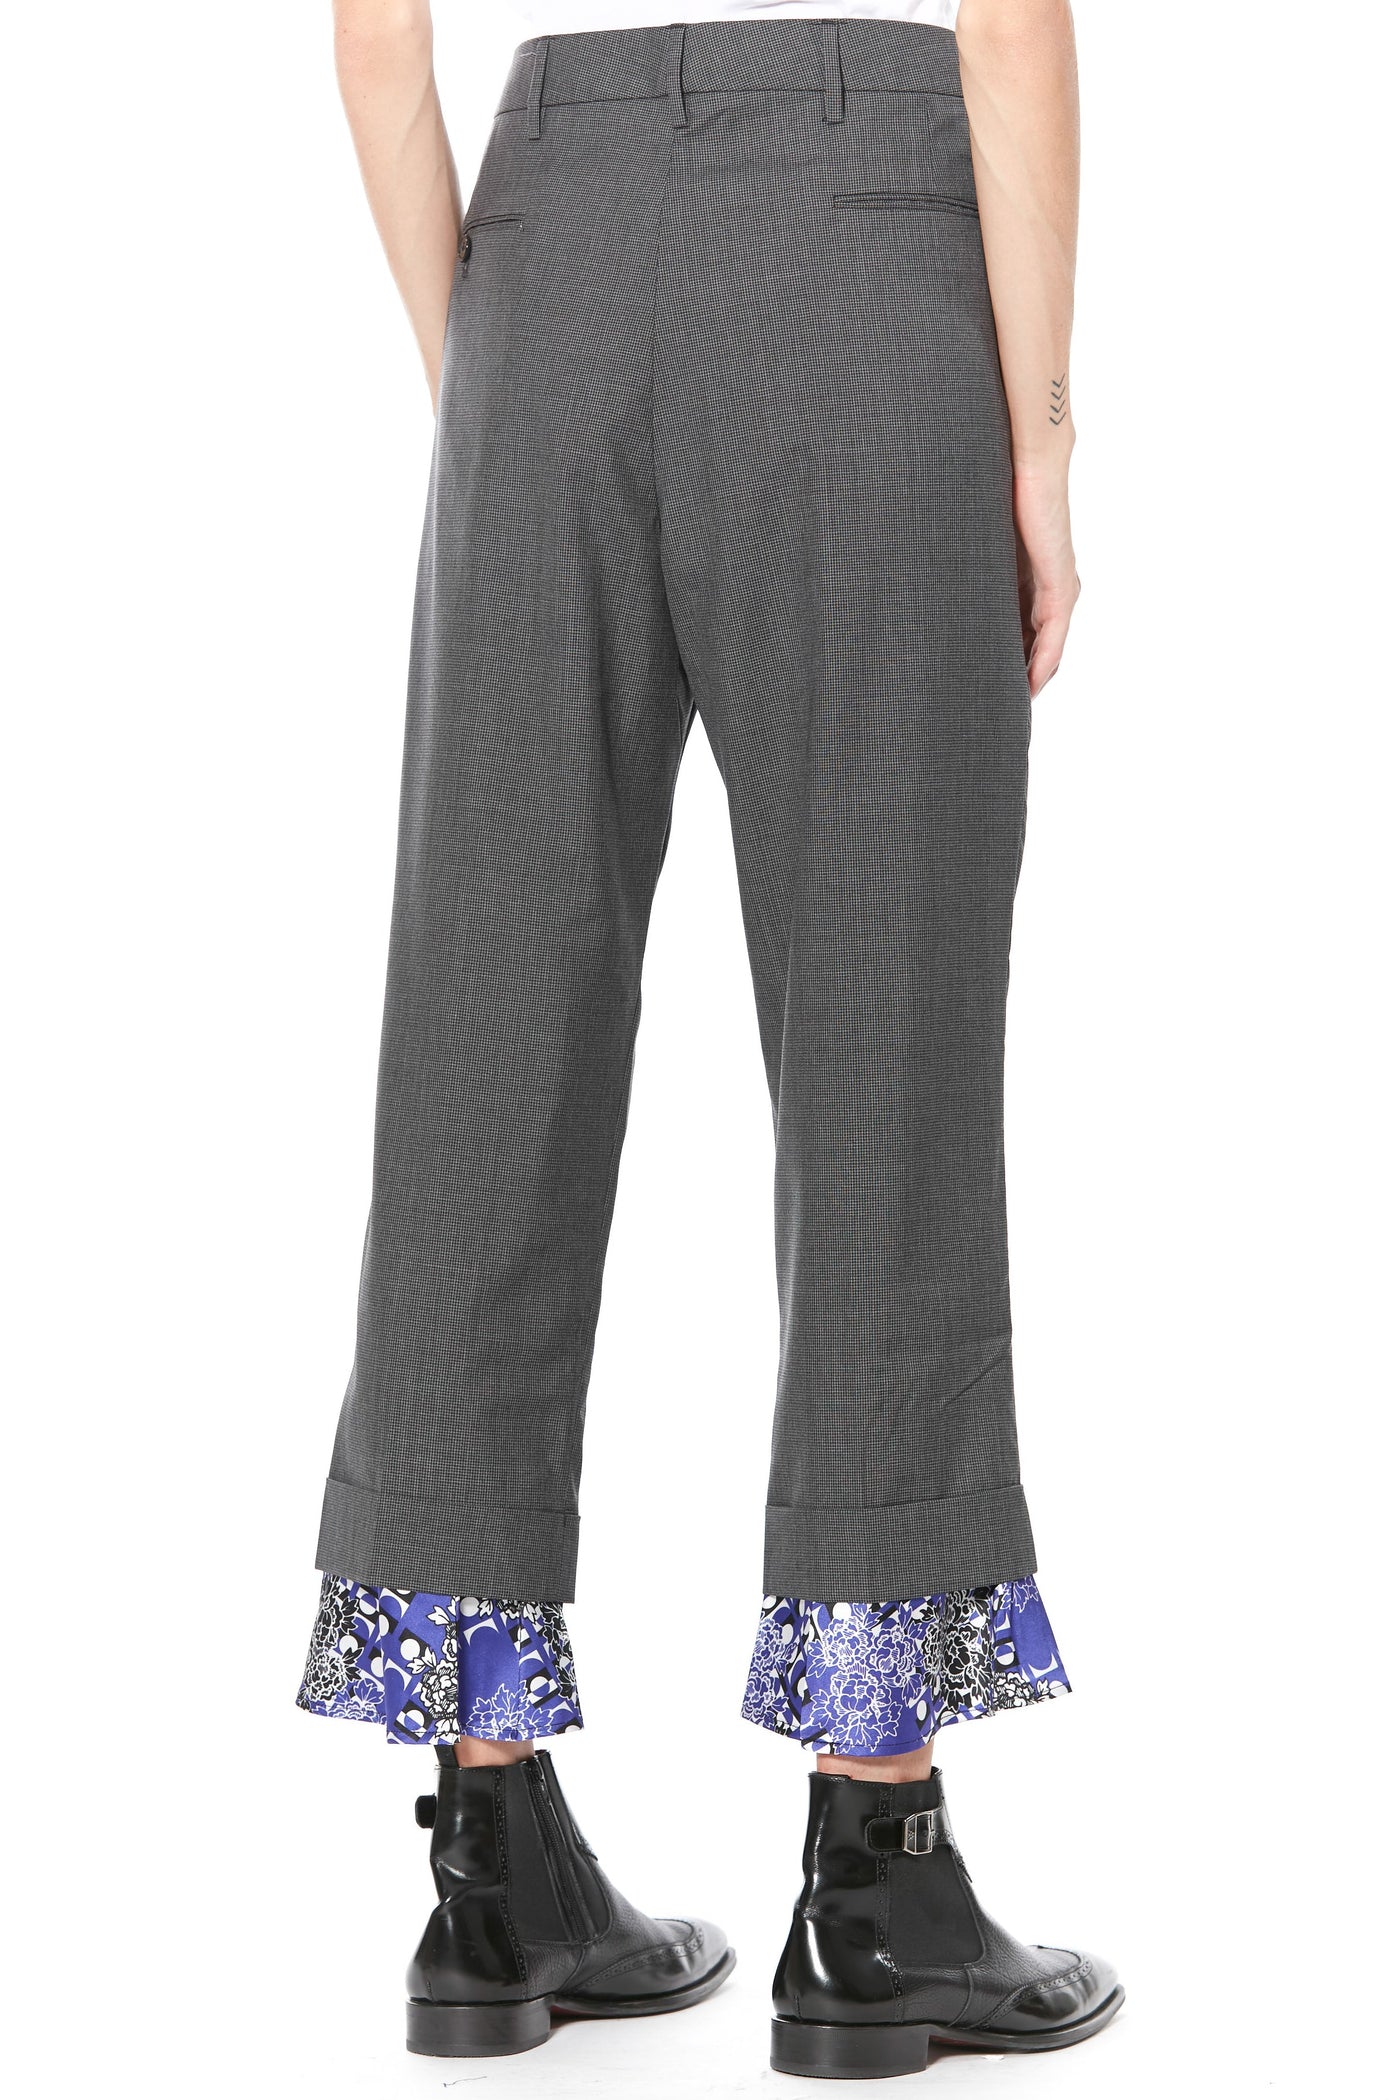 Pantalones con dobladillo estampado de lana ligera y seda